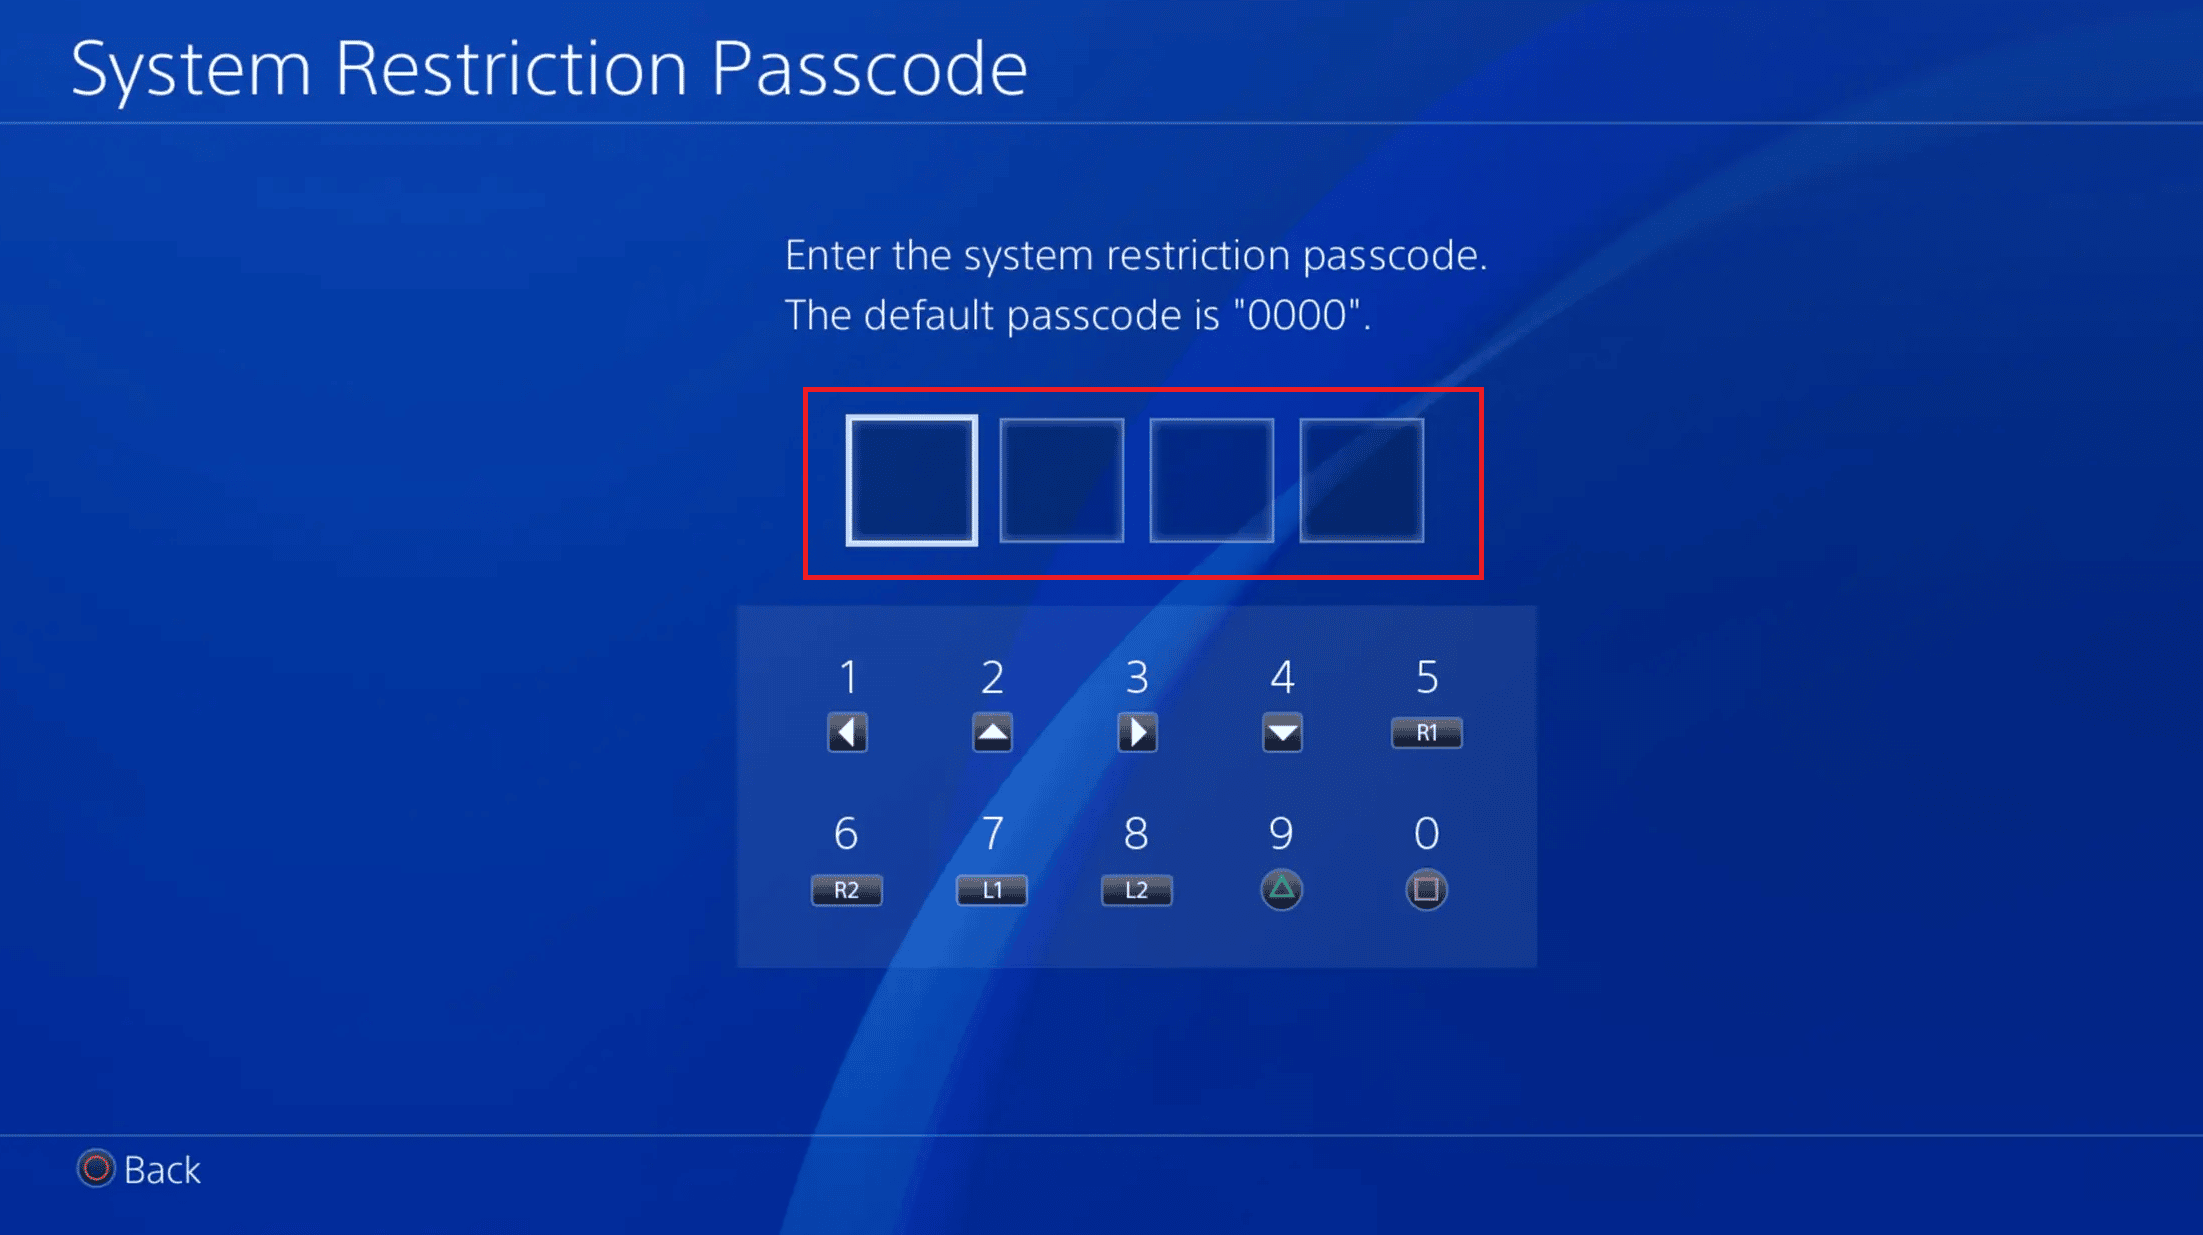 Inserisci il tuo codice di accesso | Come modificare i controlli parentali su PS4